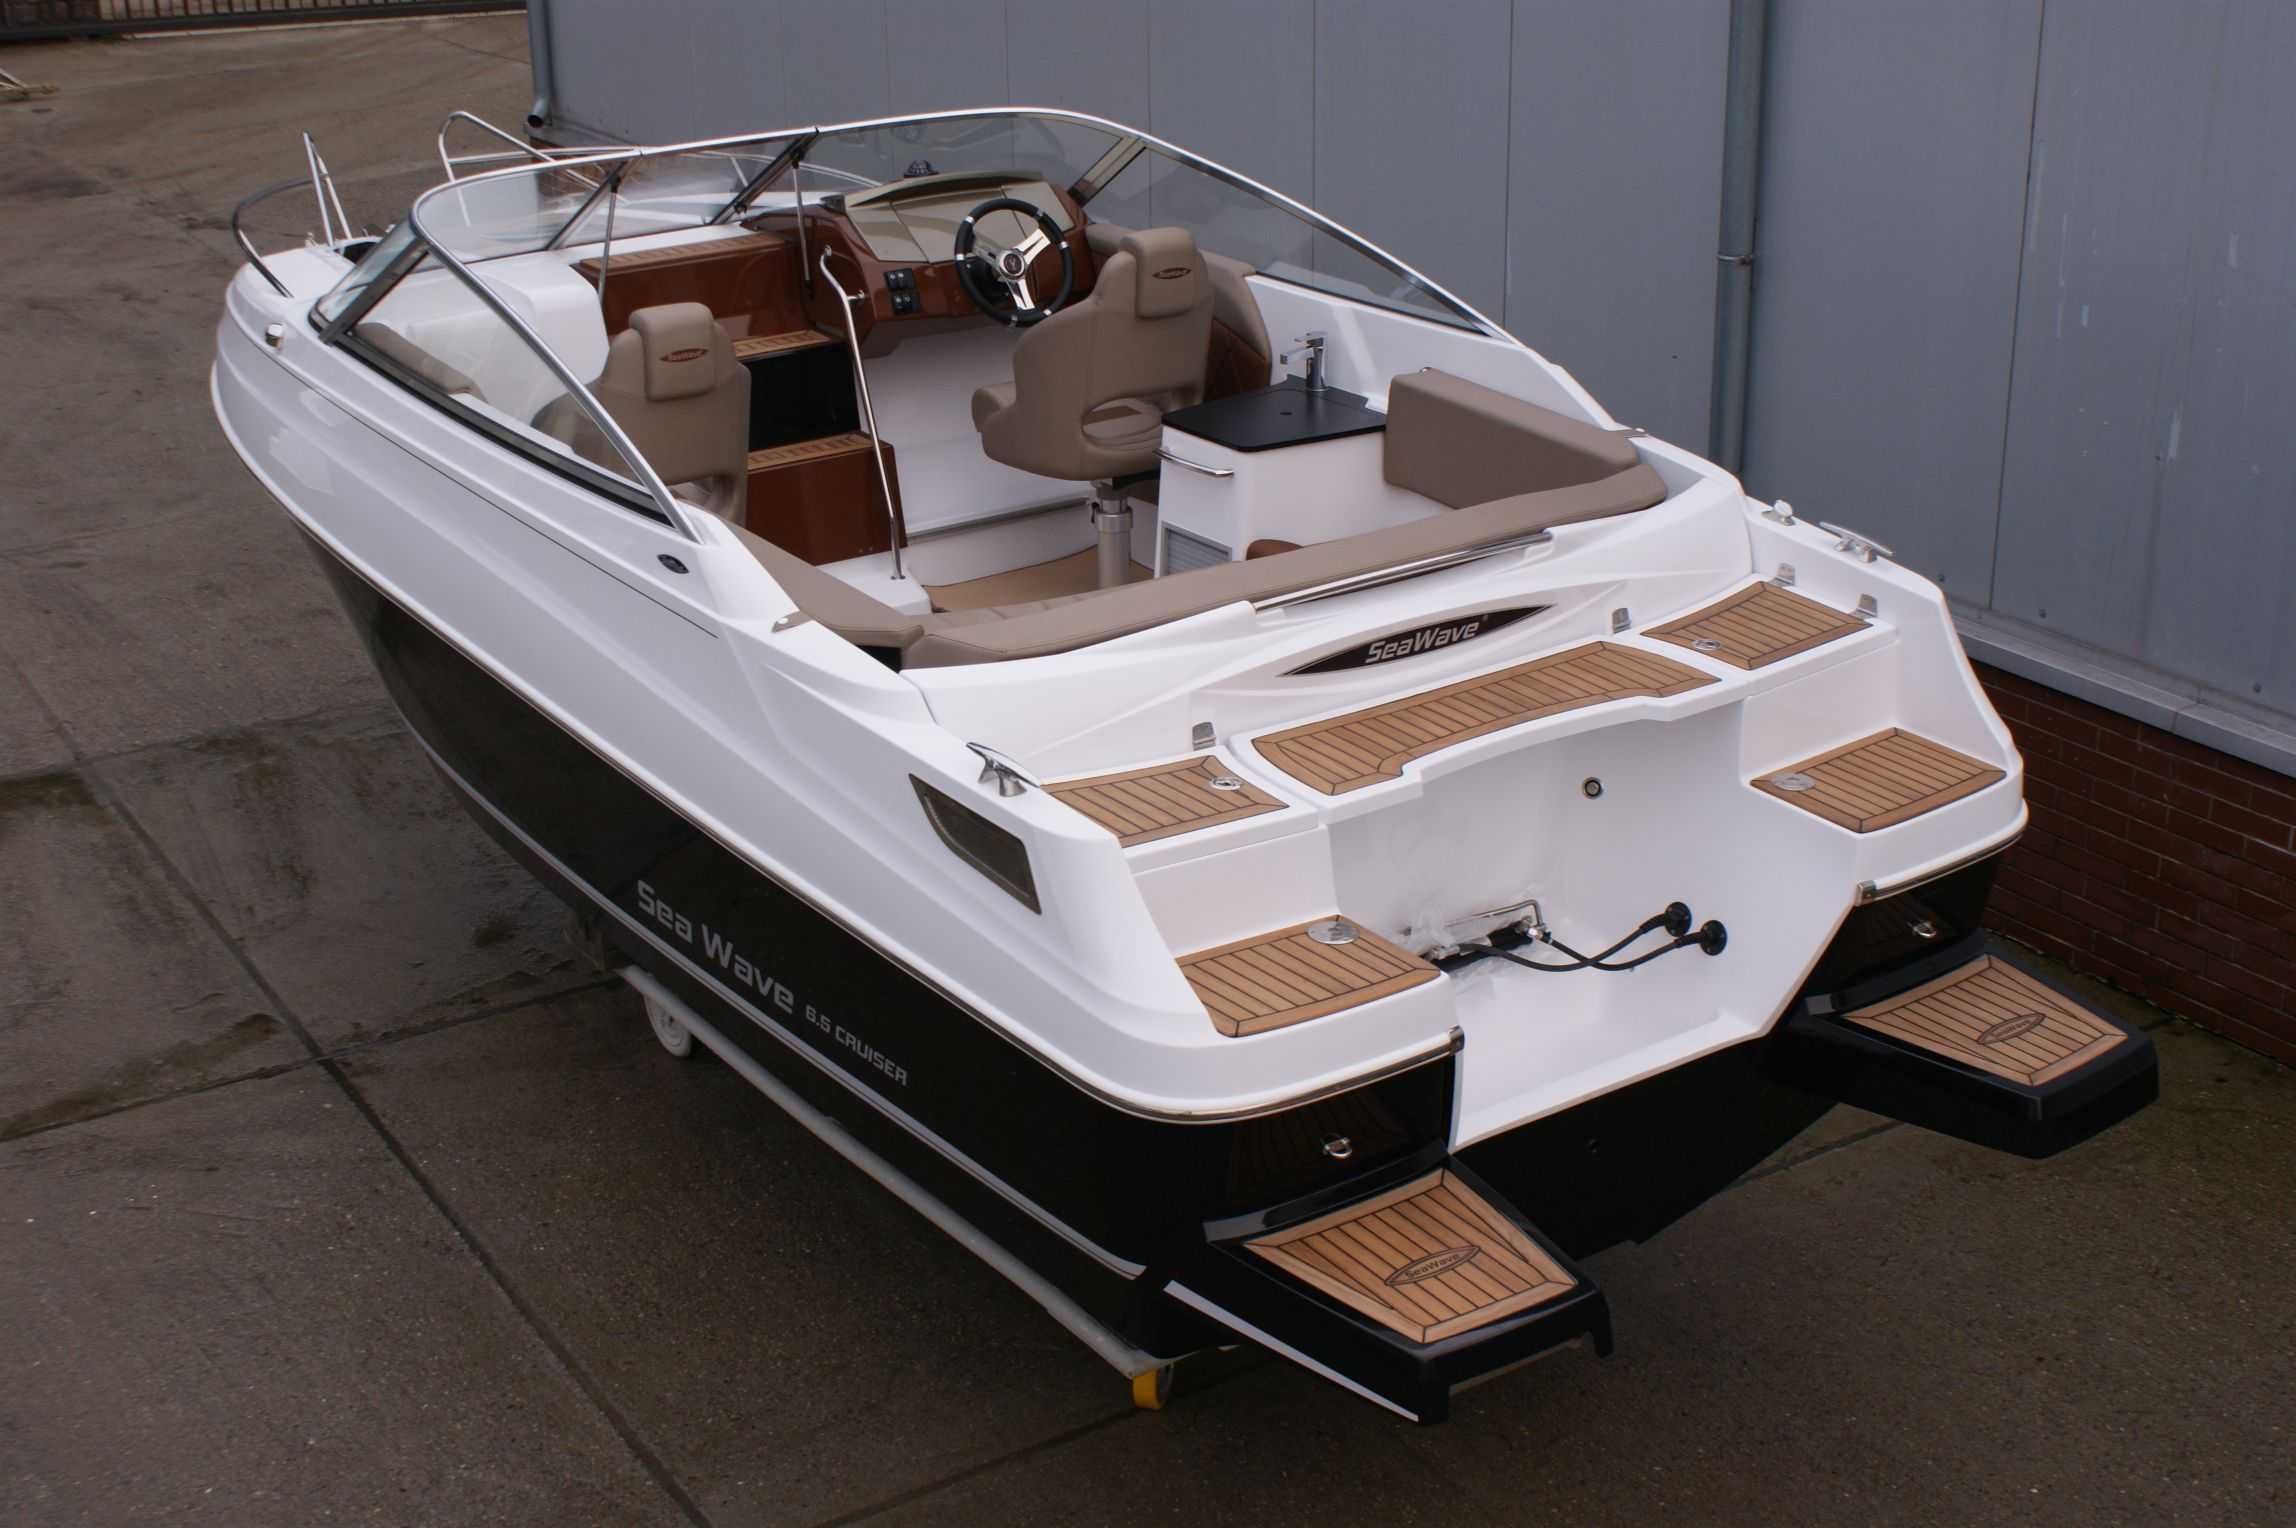 Nowa łódź motorowa  Sea Wave 6,8 CRUISER plus Yamaha VF150 Vmax